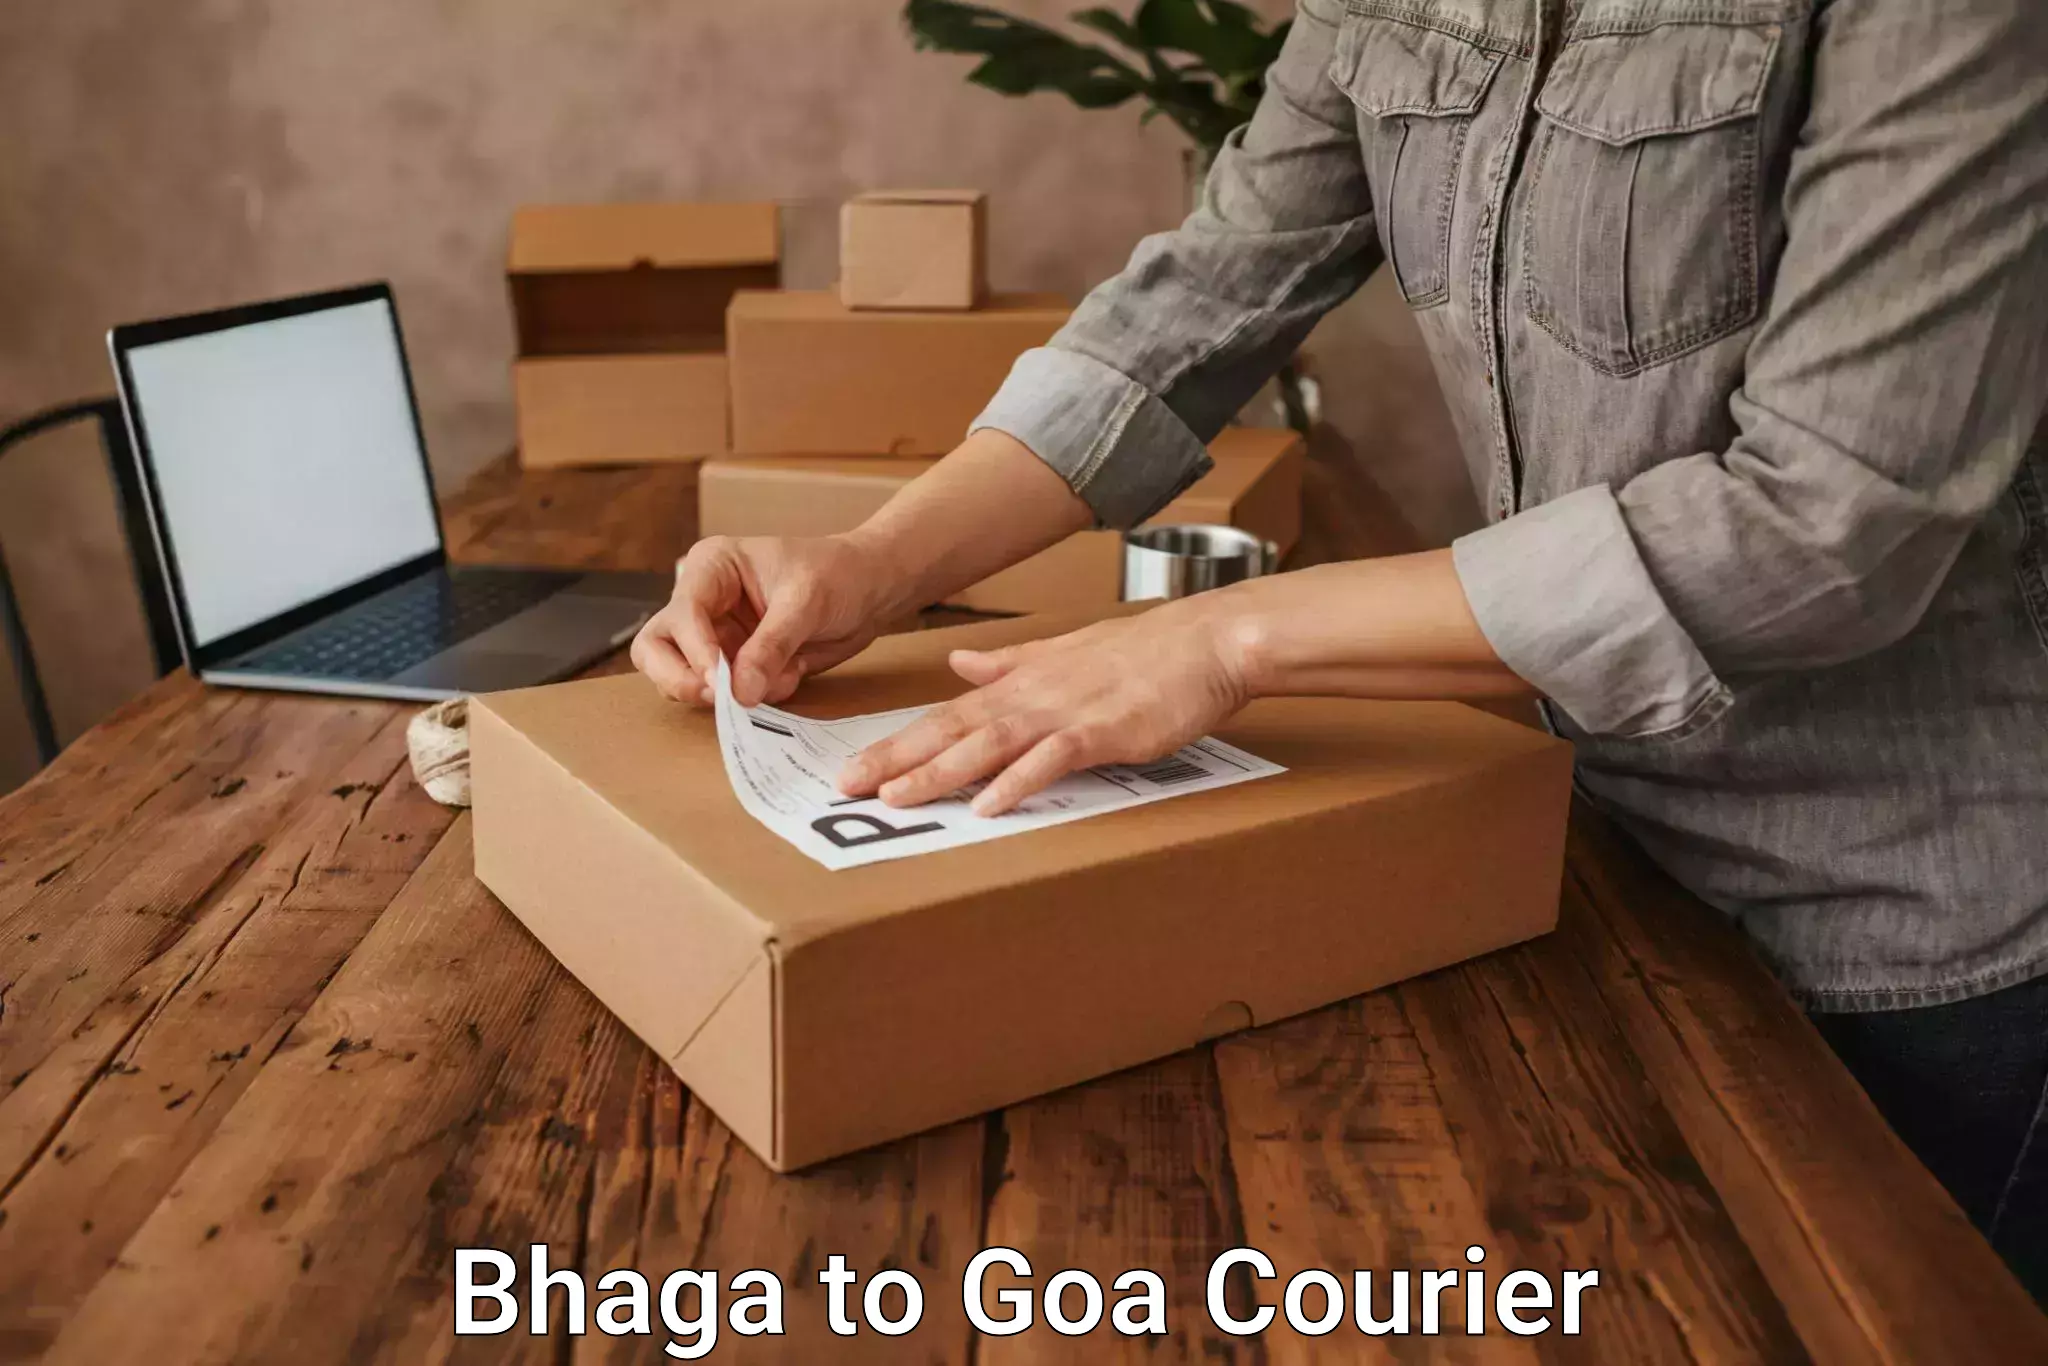 Courier service comparison in Bhaga to Ponda